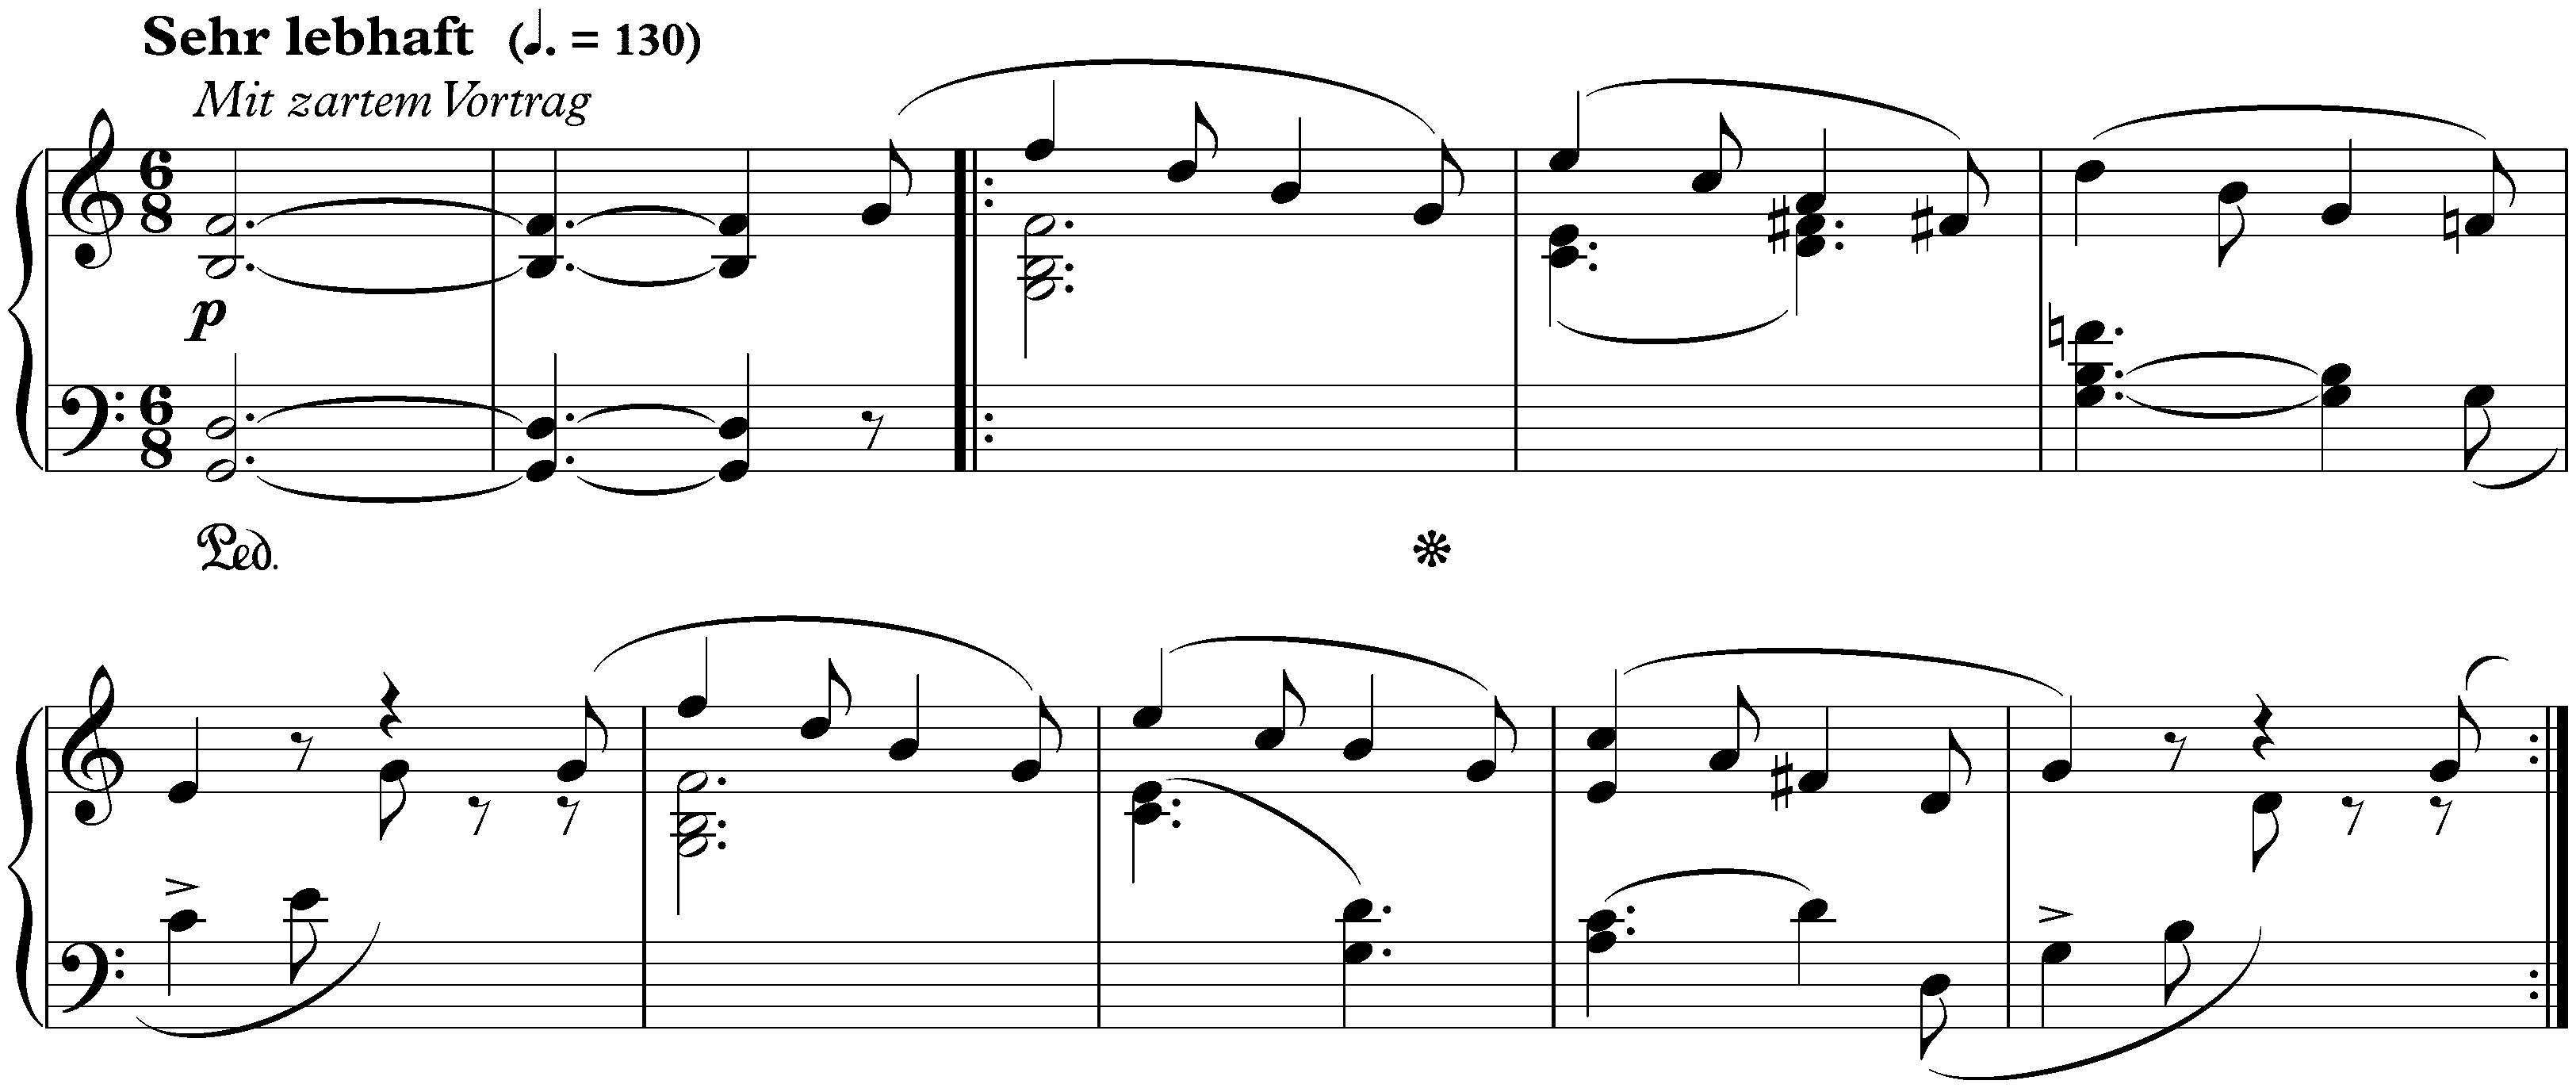 Sonate für die Jugend in C major, op. 118 no. 3; 4. Traum eines Kindes: Sehr lebhaft